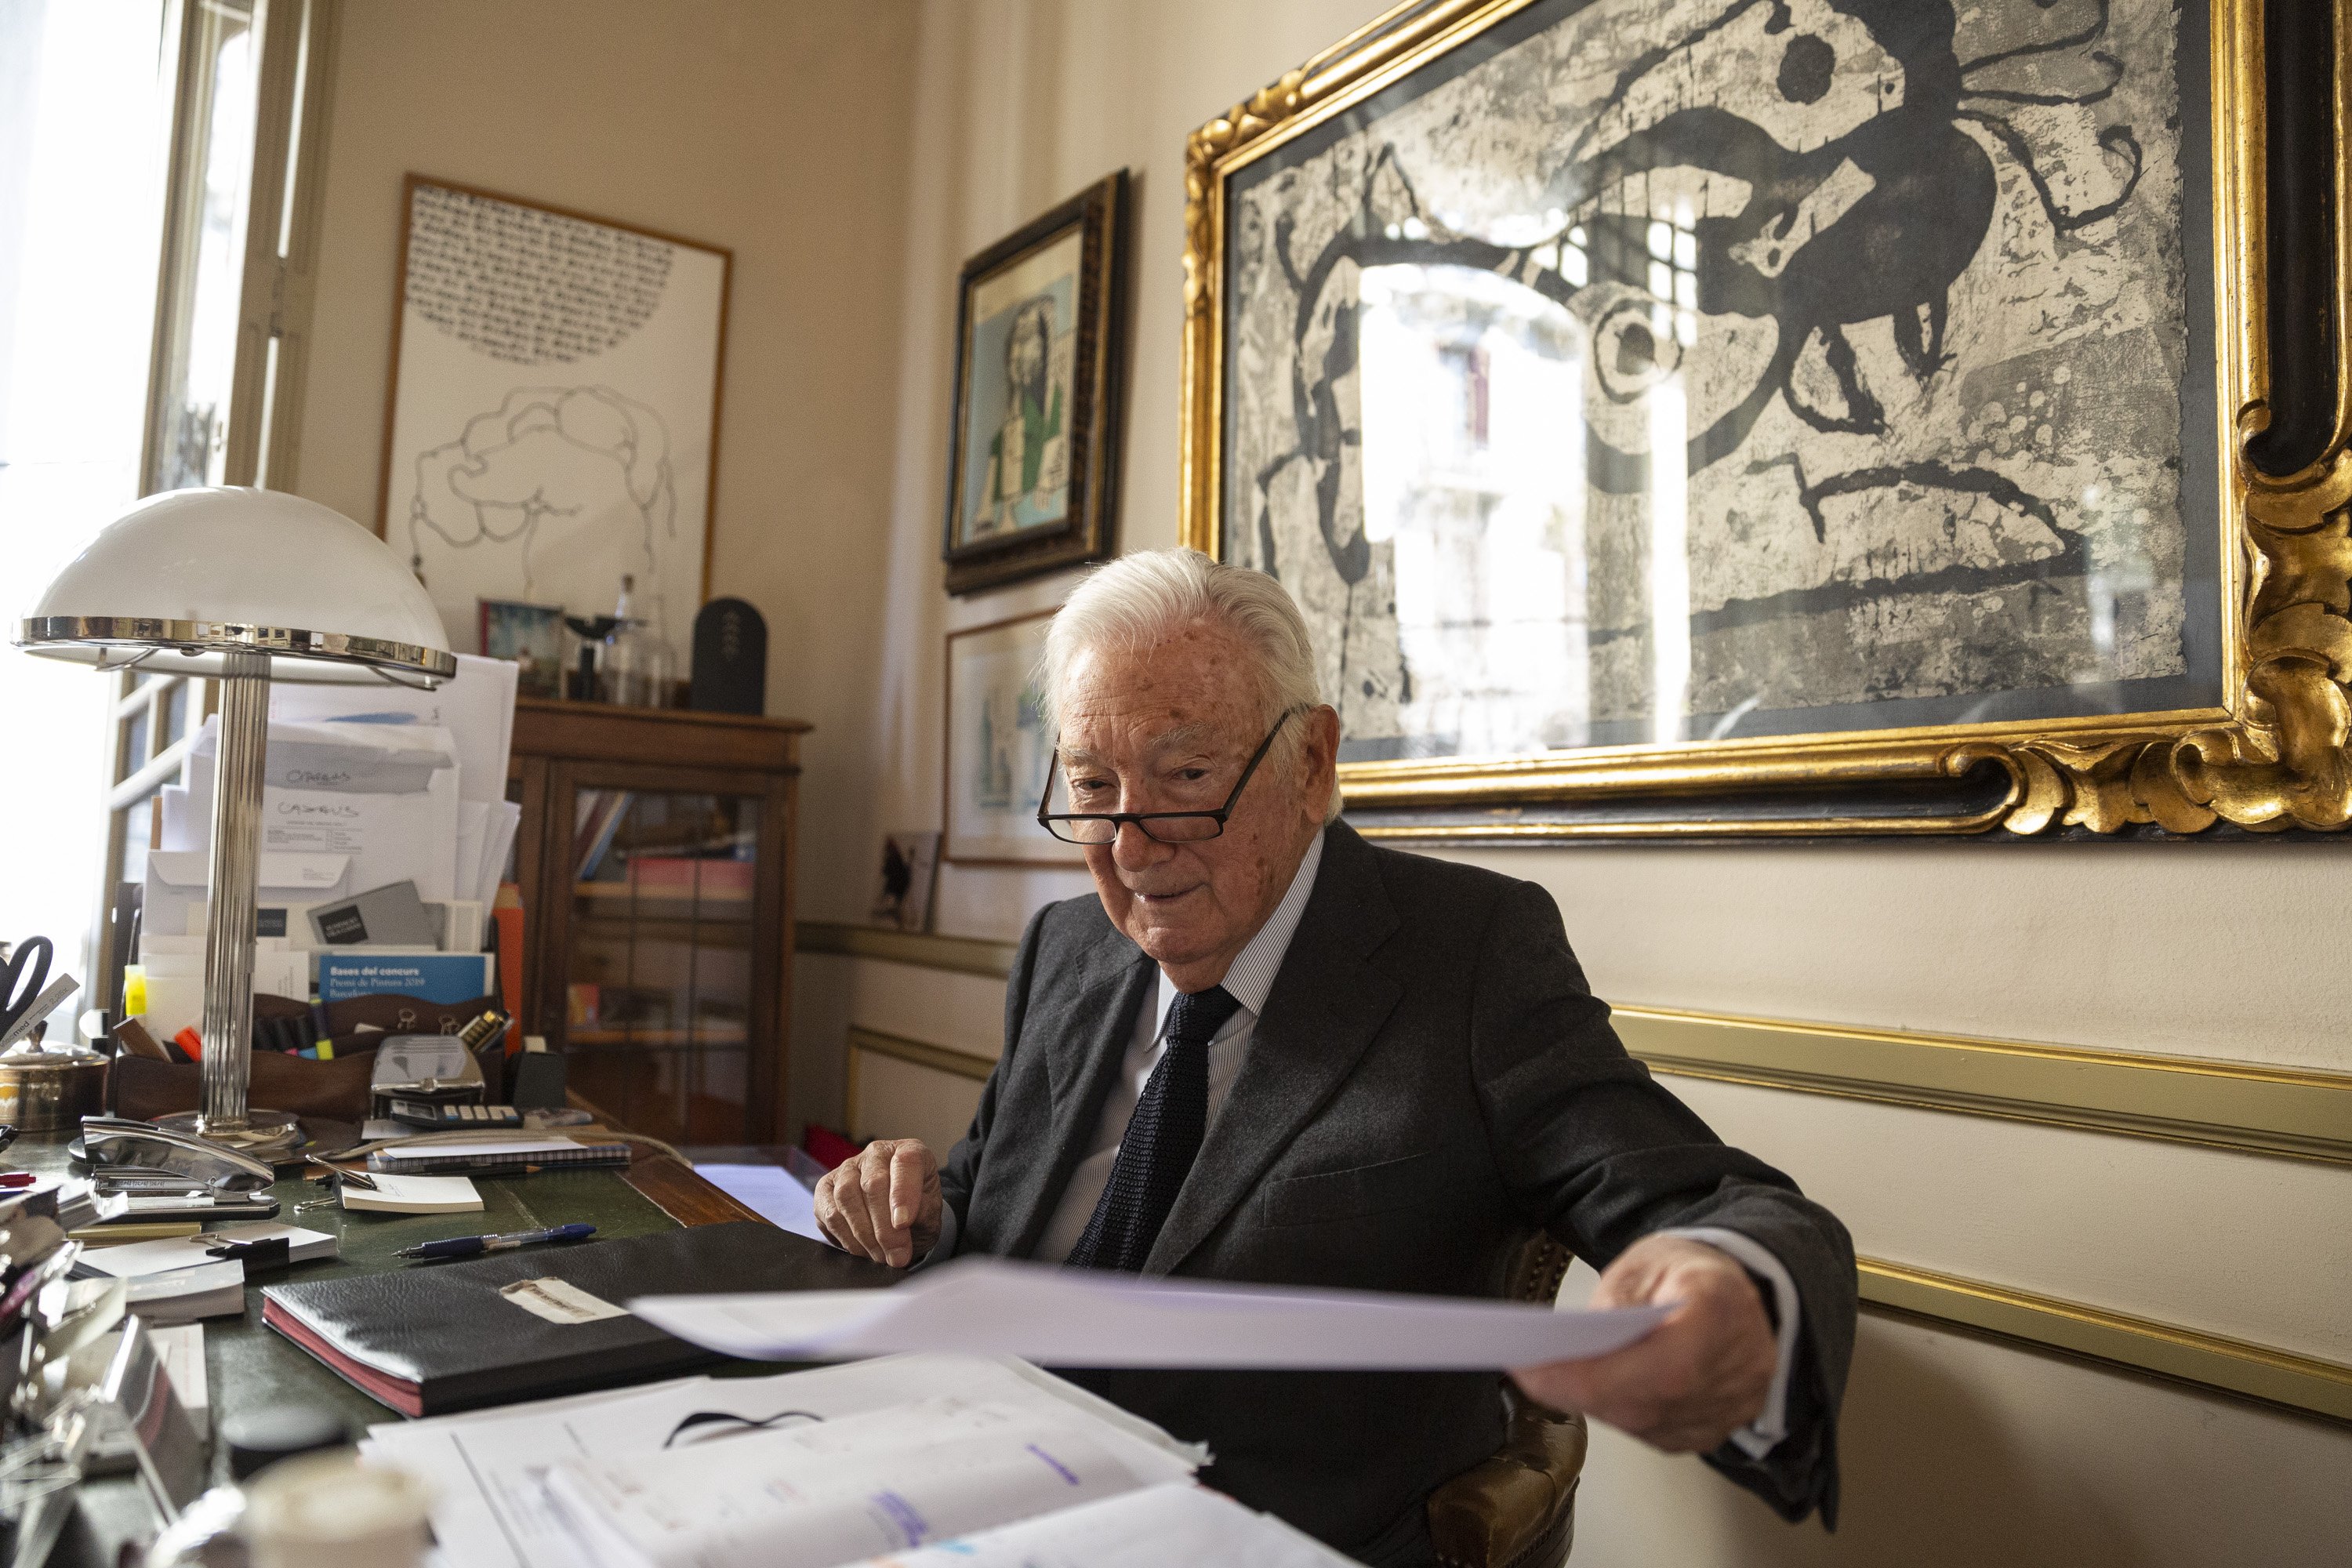 Mor Antoni Vila Casas, filantrop i col·leccionista d'art, als 92 anys